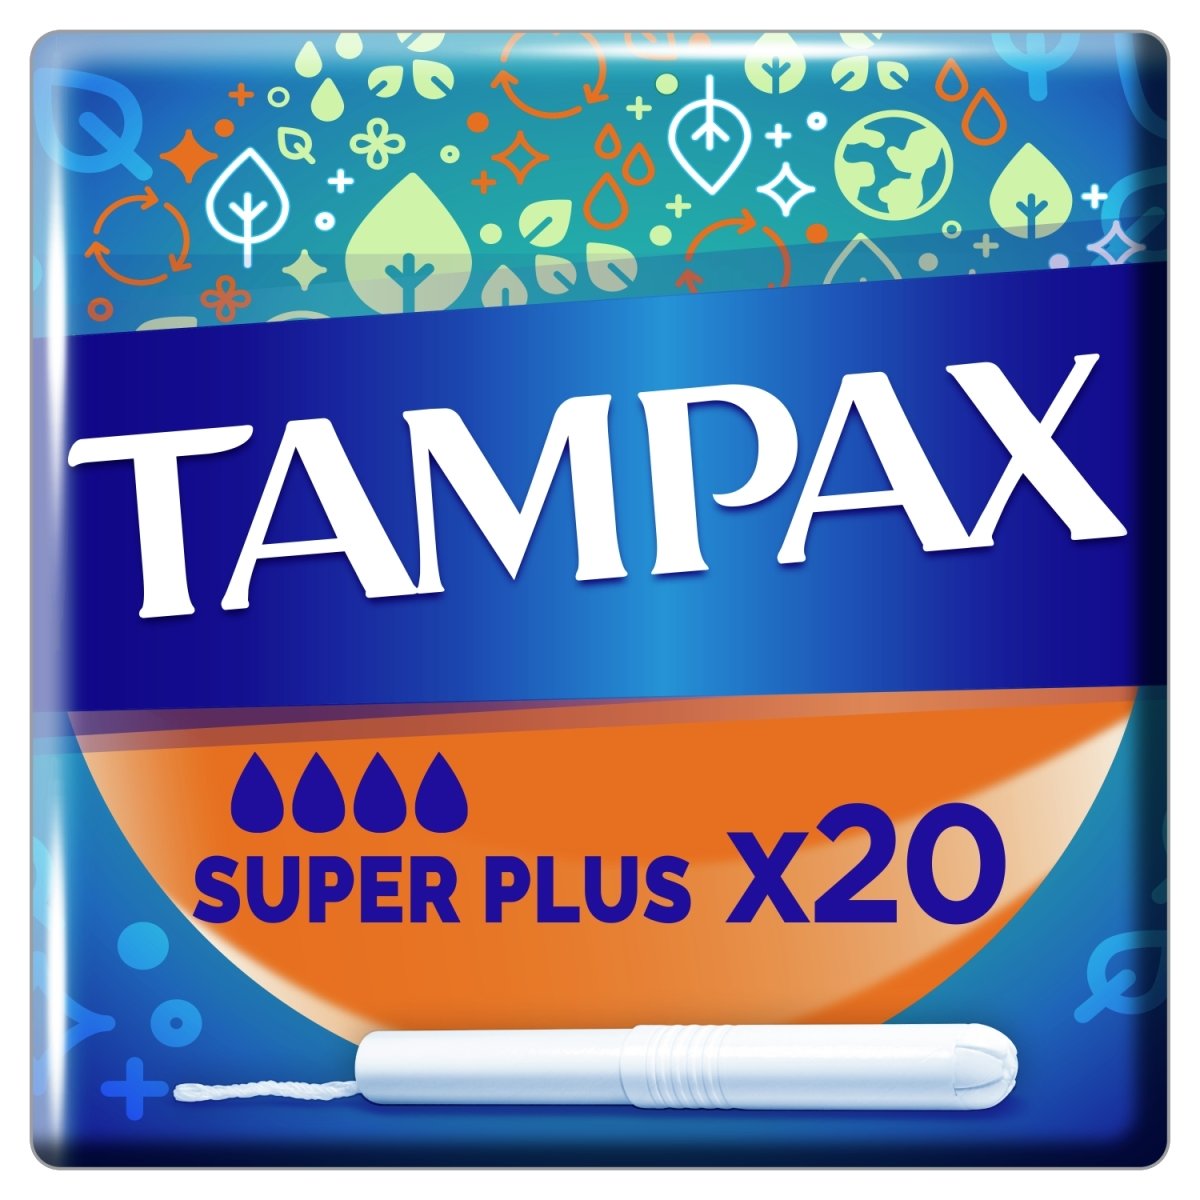 Tampax 20 Super Plus Tampax